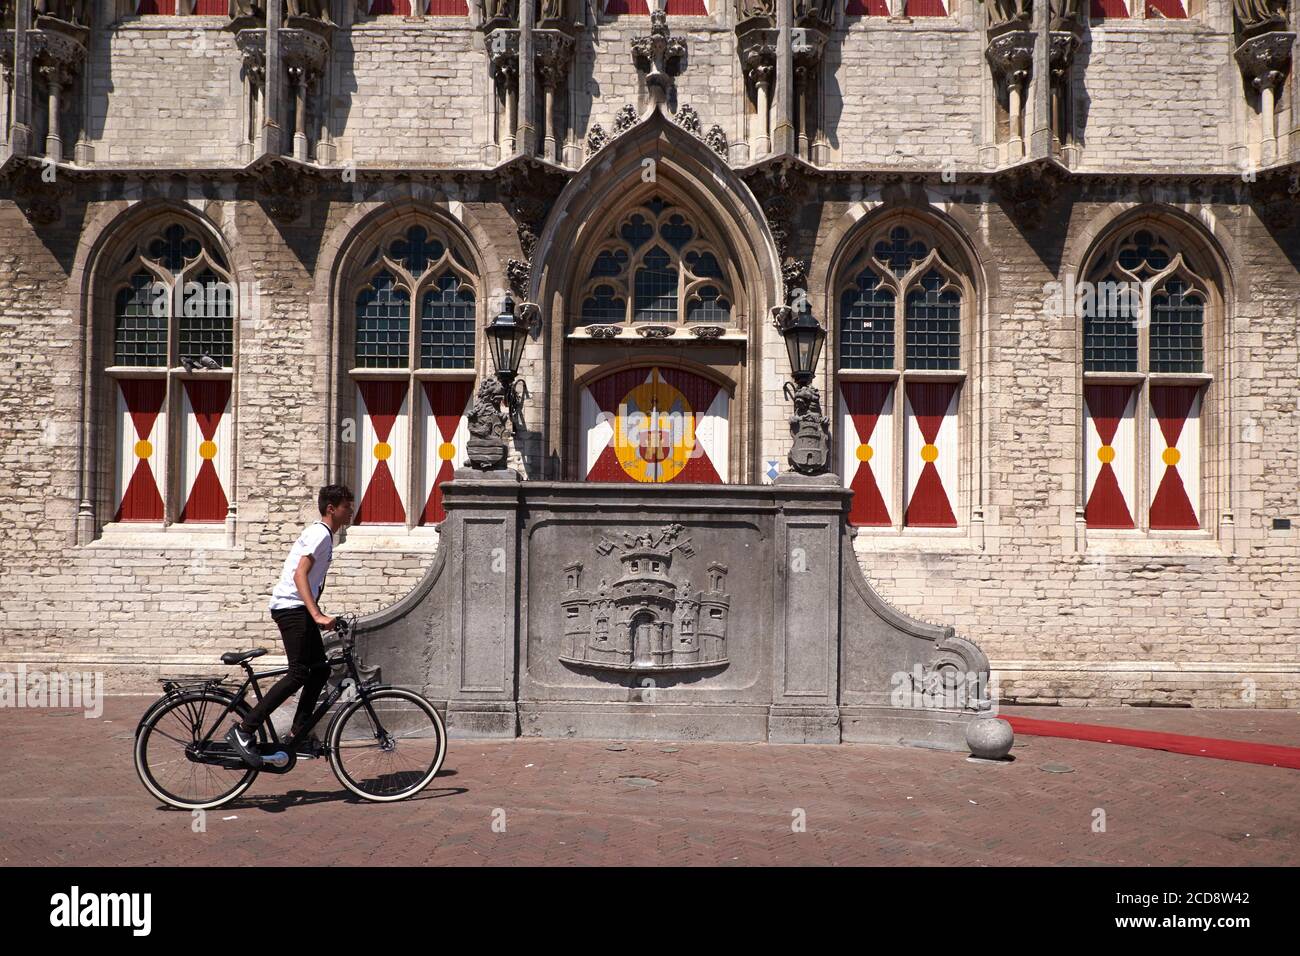 Pays-Bas, province de Zeeland, Walcheren, Middleburg, Hôtel de ville reconstruit au XVIe siècle, l'un des exemples les plus accomplis du gothique flamboyant Brabant. Siège de Roosevelt Academy Banque D'Images